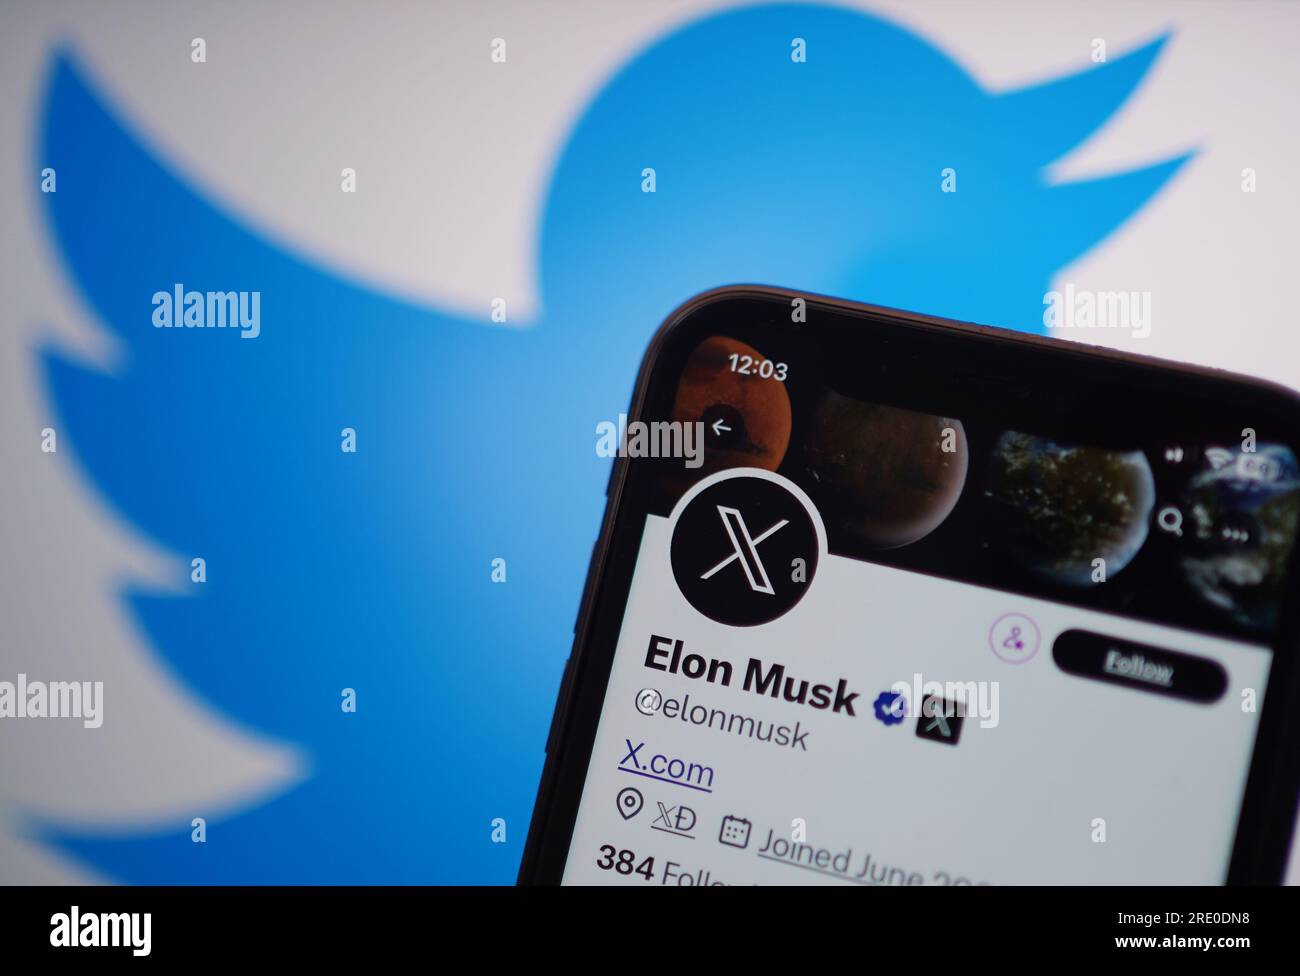 Un telefono visualizza l'account Twitter di Elon Musk, con il nuovo logo di Twitter e l'indirizzo del sito X.com. Twitter ha sostituito il famoso logo Bird della piattaforma di social media con una X come parte dei piani del proprietario Elon Musk di creare un'app "Everything". Data immagine: Lunedì 24 luglio 2023. Foto Stock